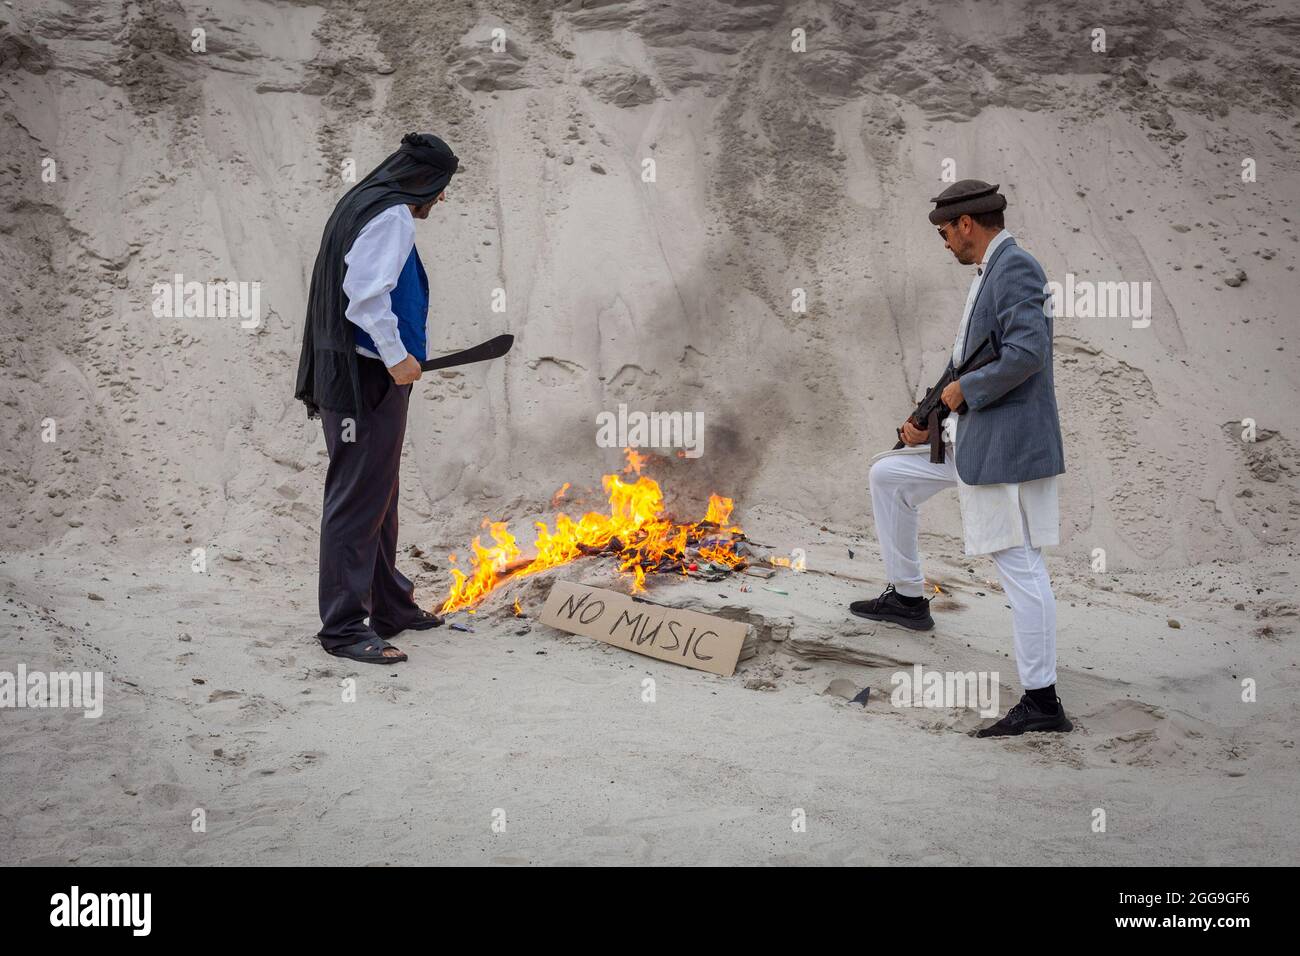 Les terroristes afghans détruisent la musique. Ils brûlent des fournitures musicales. Ils interdisent la musique en Afghanistan. Les talibans font feu à la musique. Banque D'Images